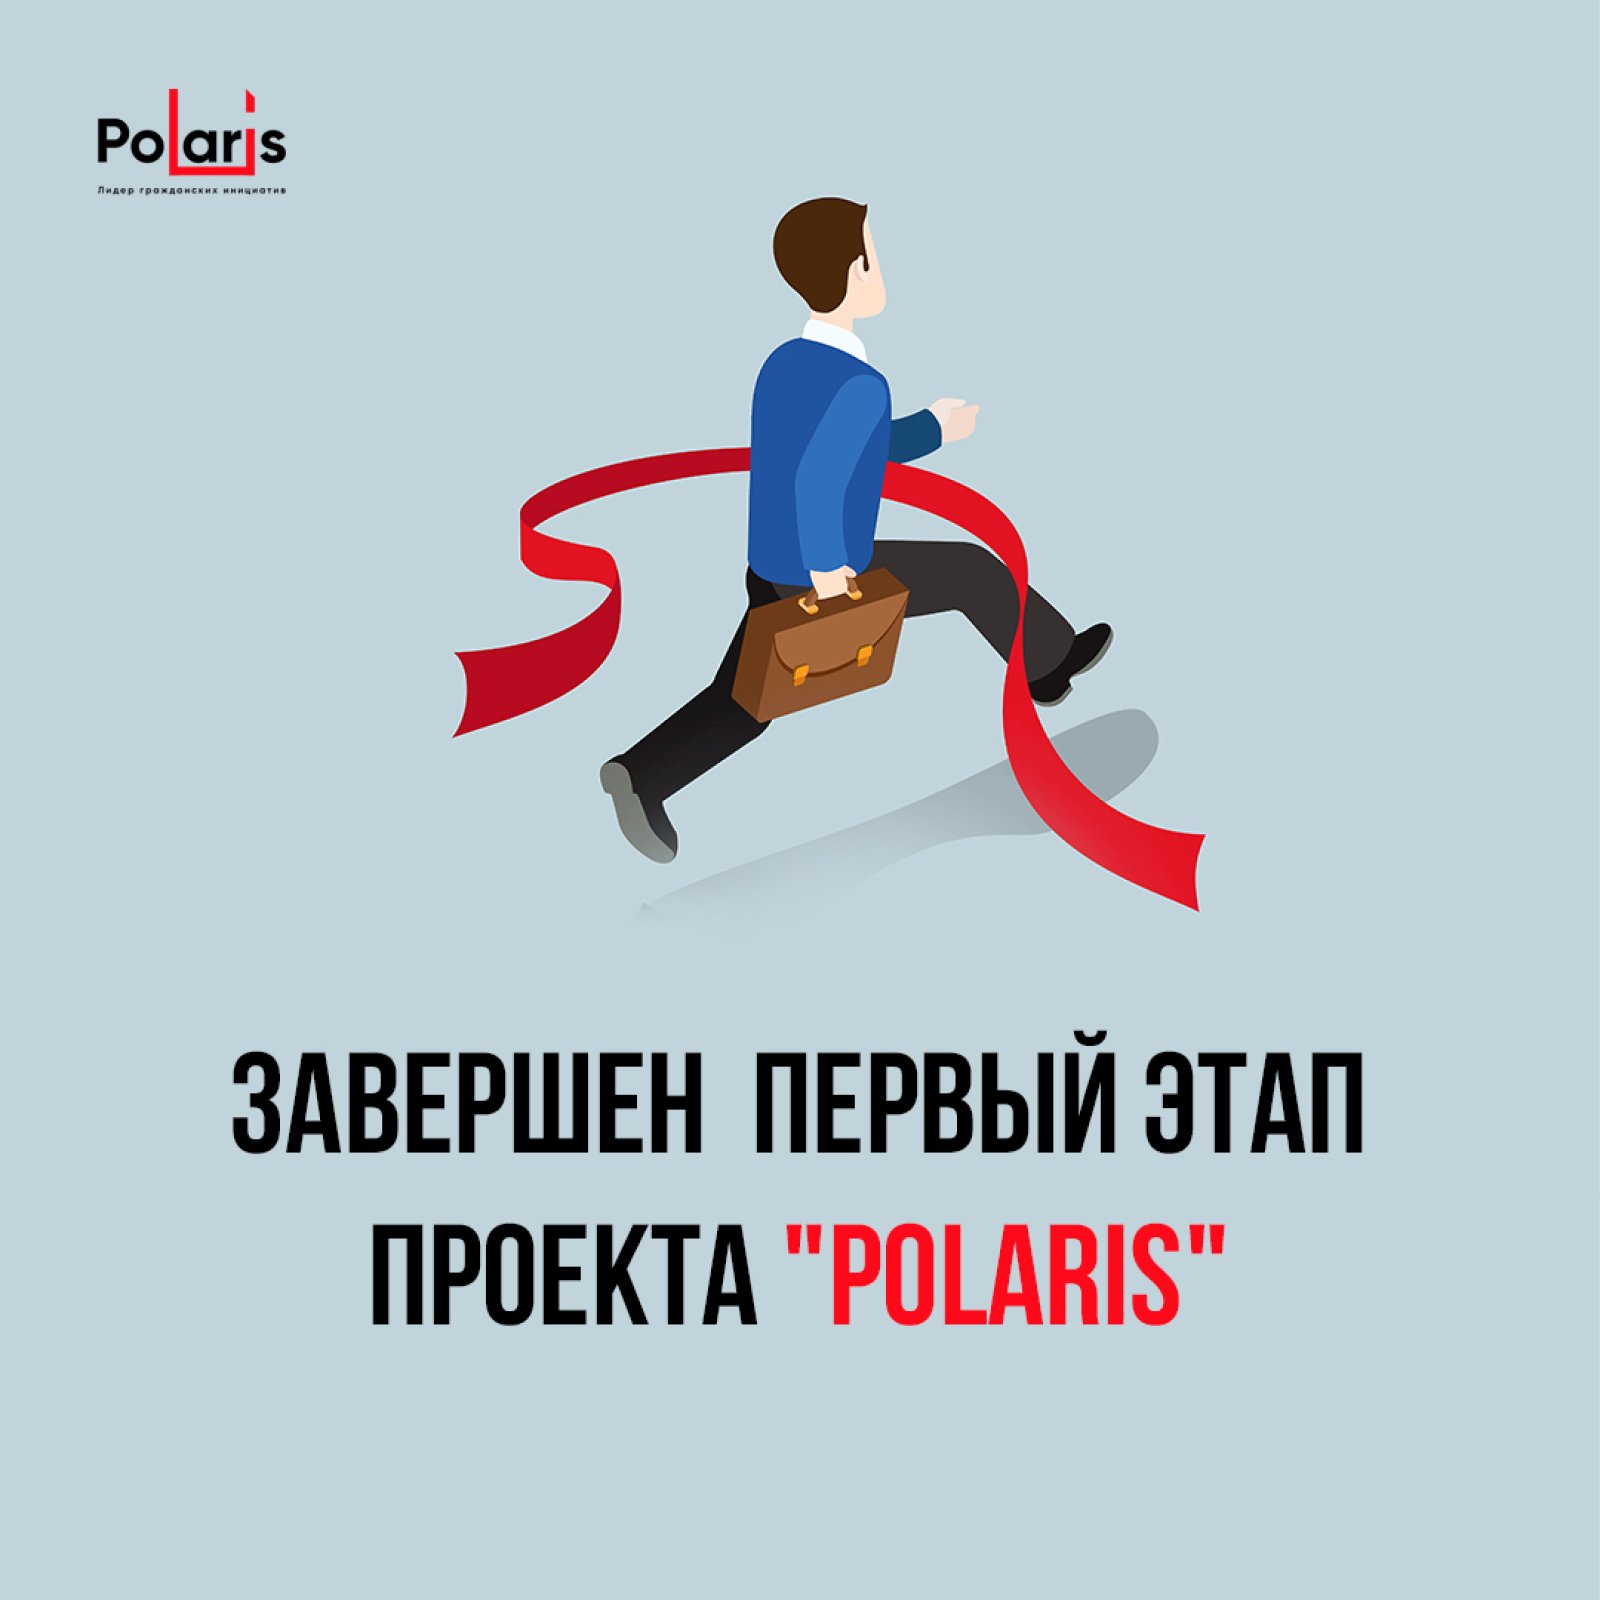 Завершен первый этап проекта "Polaris"